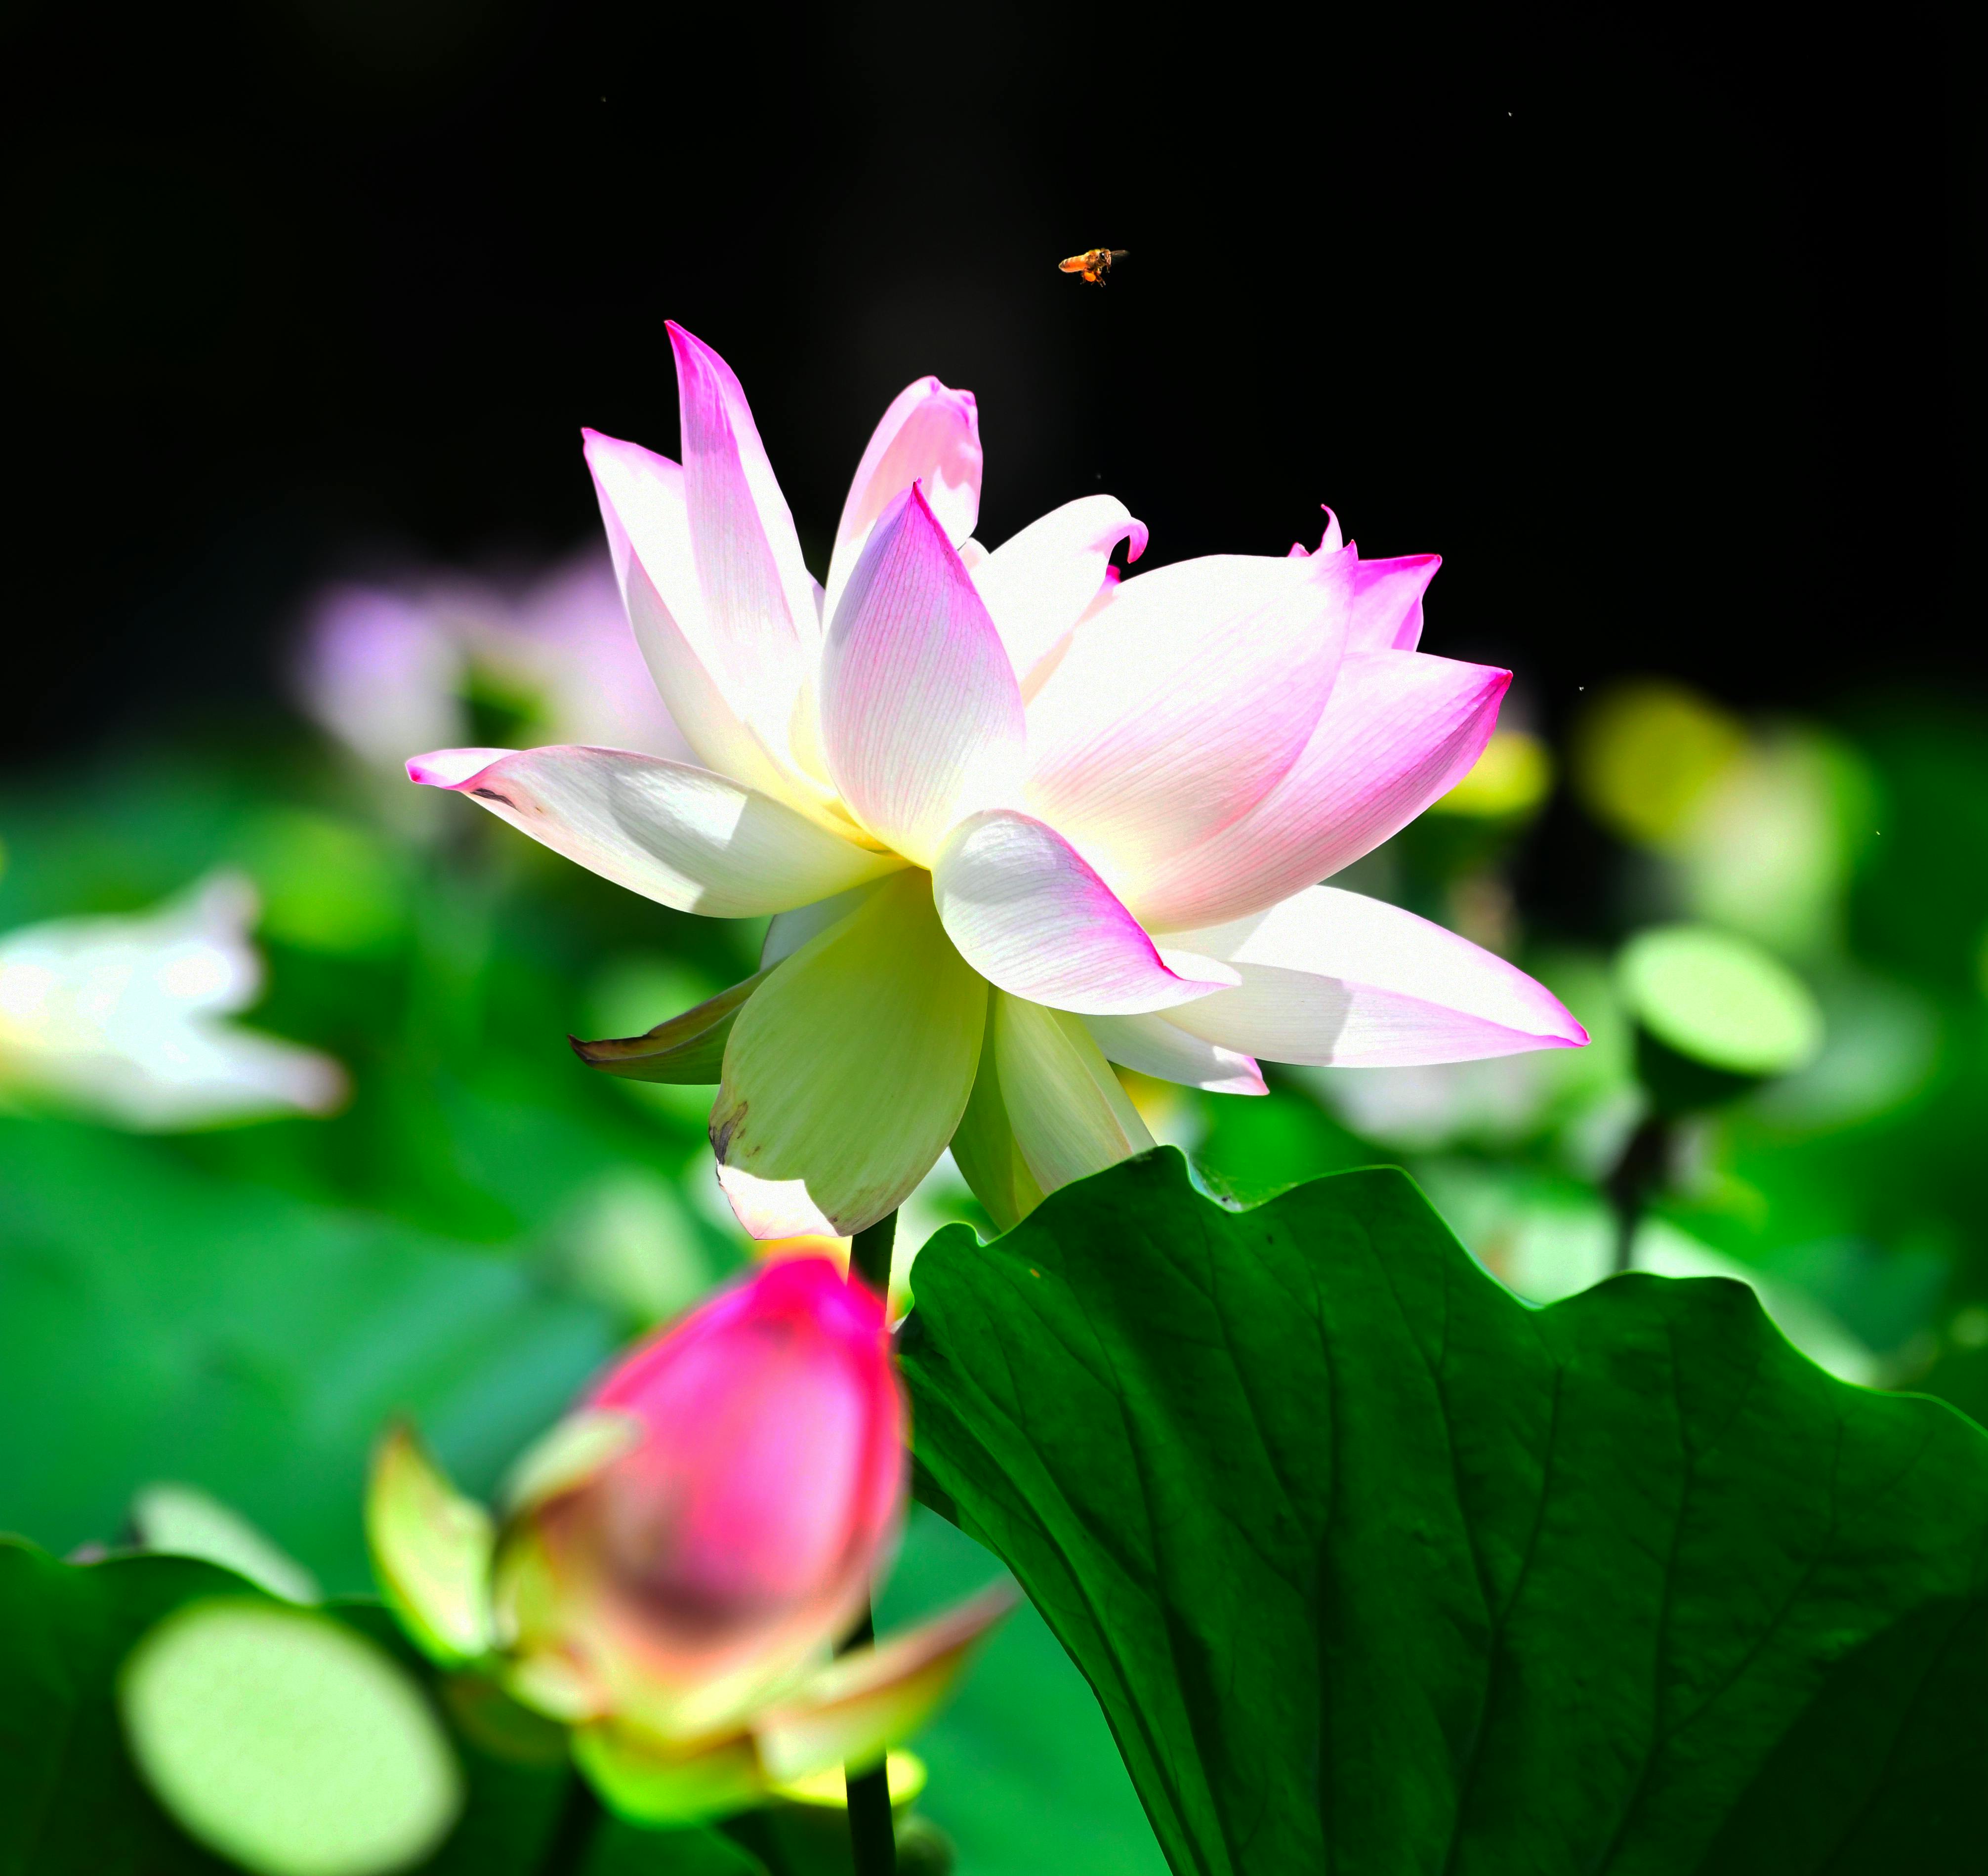 Hoa sen hồng là biểu tượng của sự thanh lịch và tinh tế trong văn hóa Việt Nam. Bức ảnh này cho bạn cơ hội chiêm ngưỡng sự tuyệt đẹp của hoa sen hồng. Hãy cảm nhận nét đẹp của chúng và hiểu thêm về ý nghĩa kích thước của hoa sen hồng trong văn hóa dân tộc.